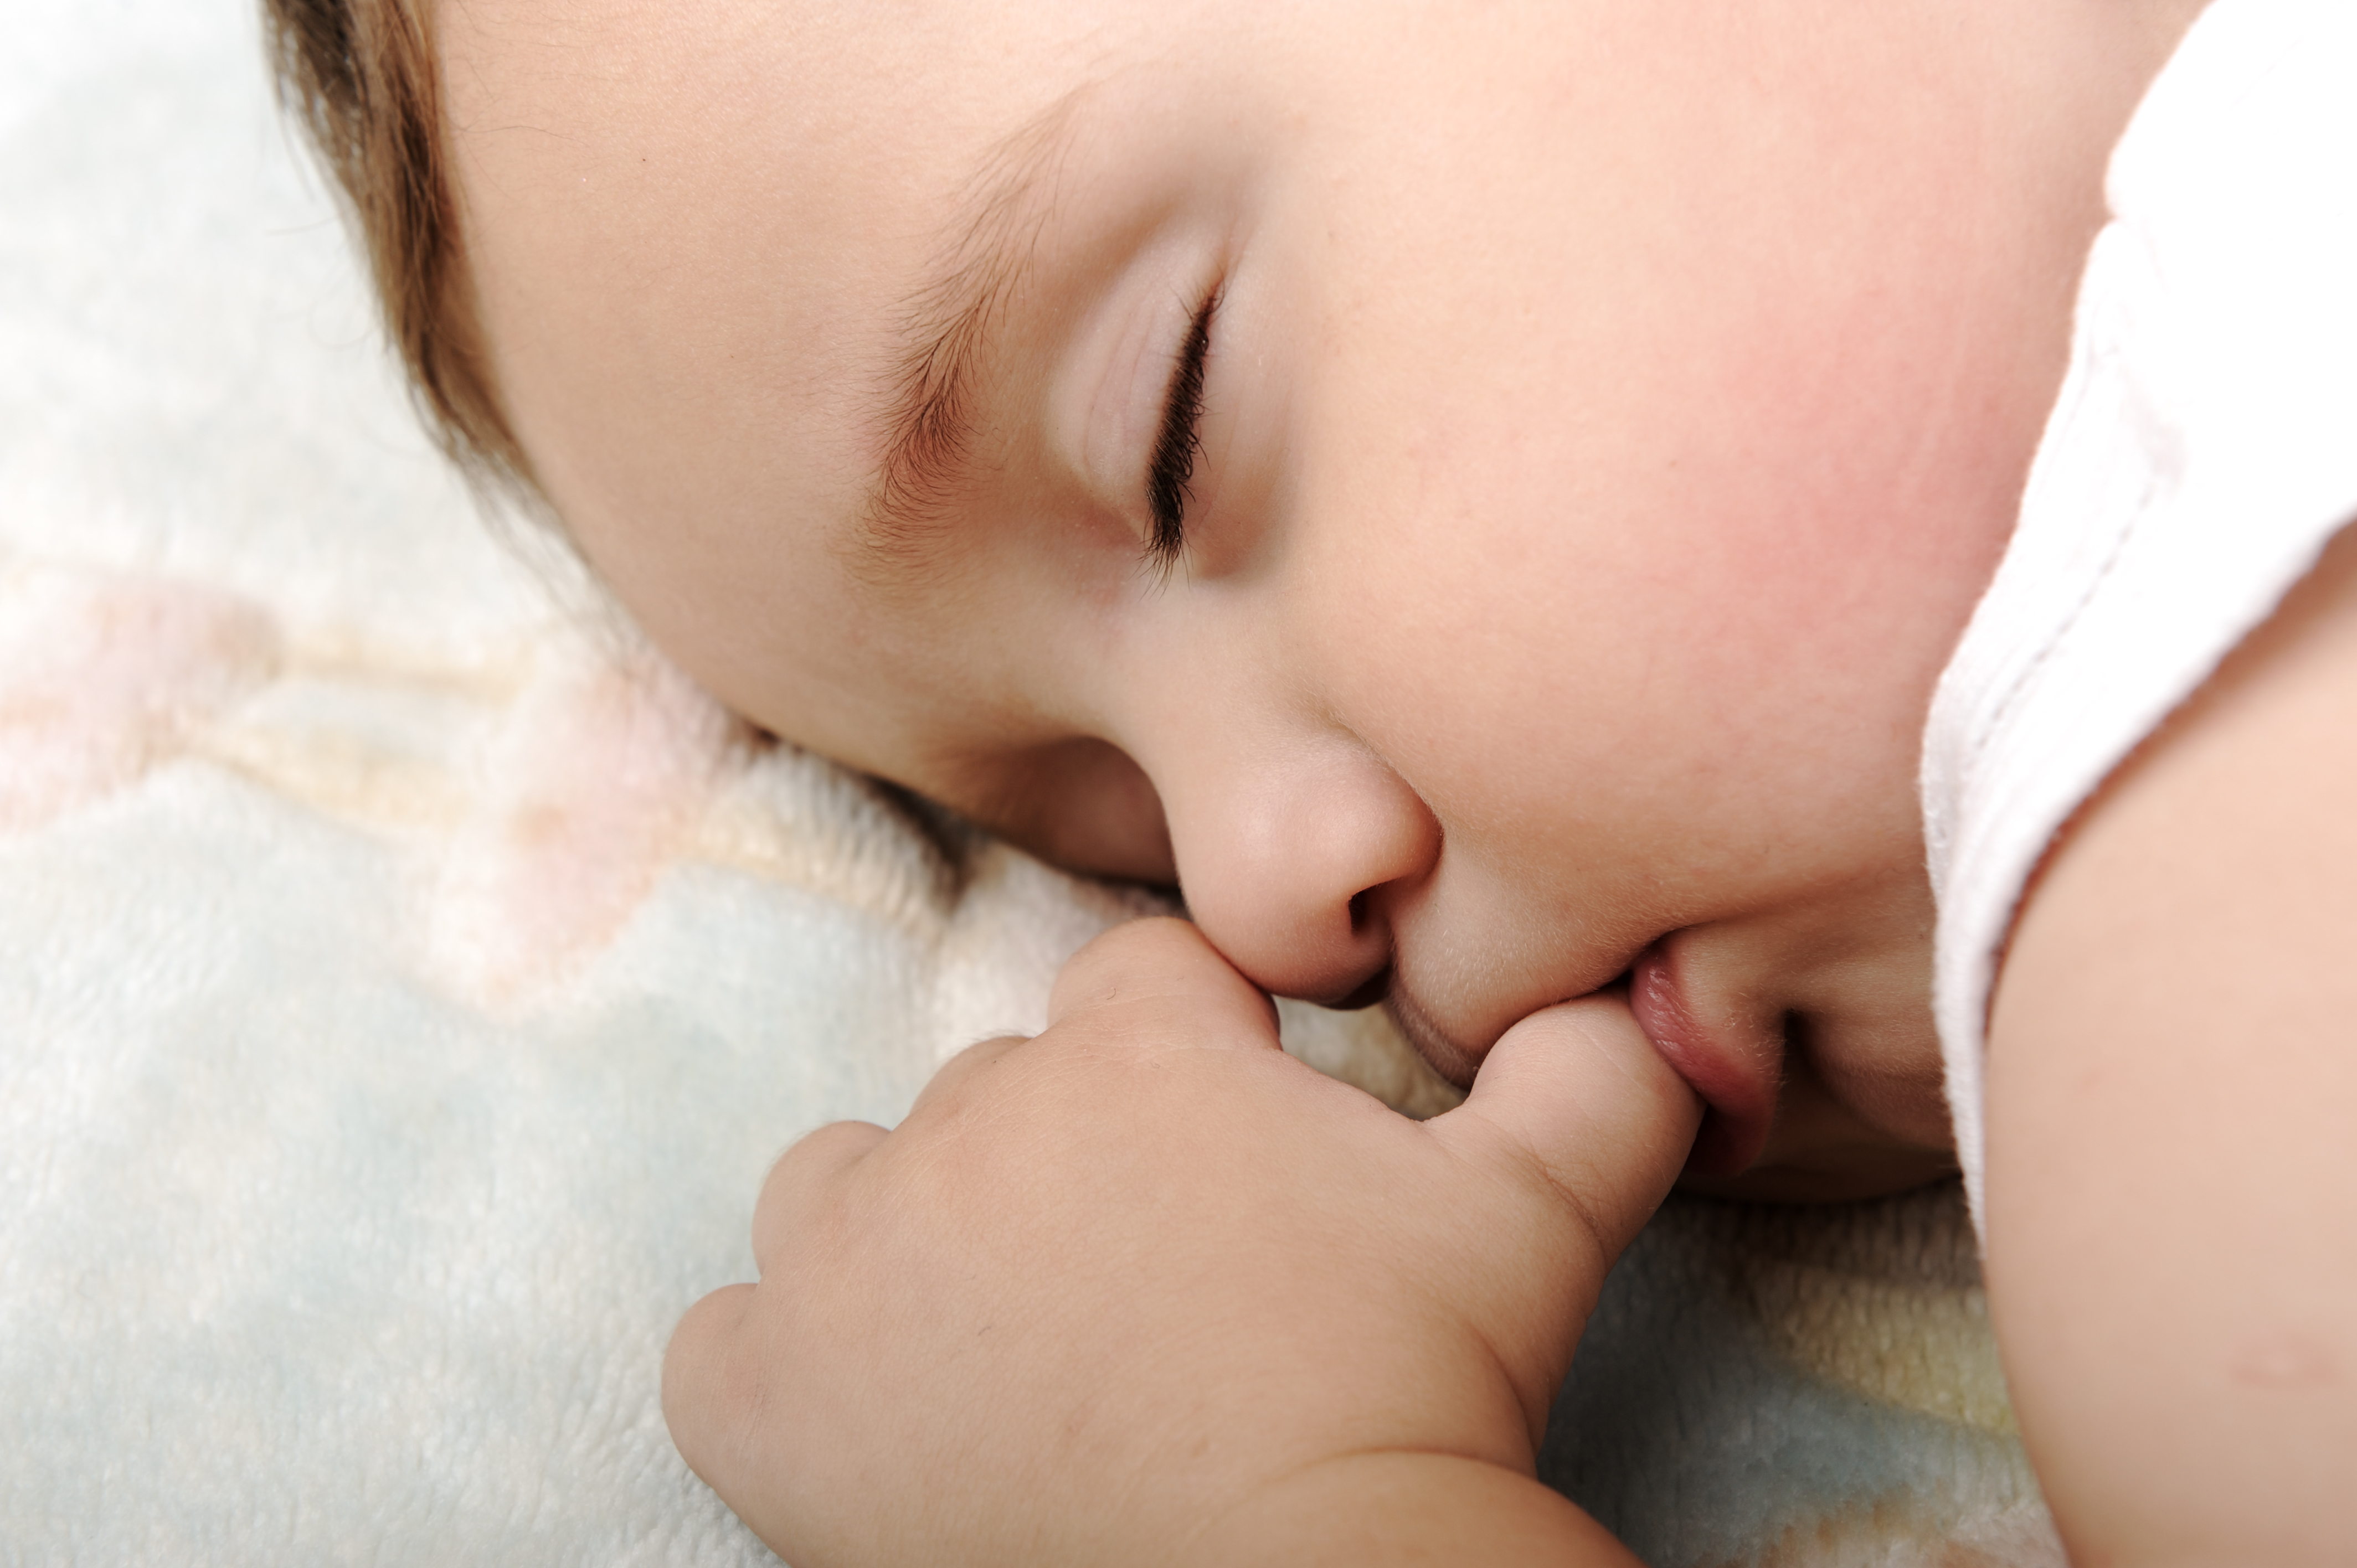 Лучшие сосание. Спящий младенец. Сосательный рефлекс у младенца. Младенец с пальцем во рту. Сосание новорожденного.